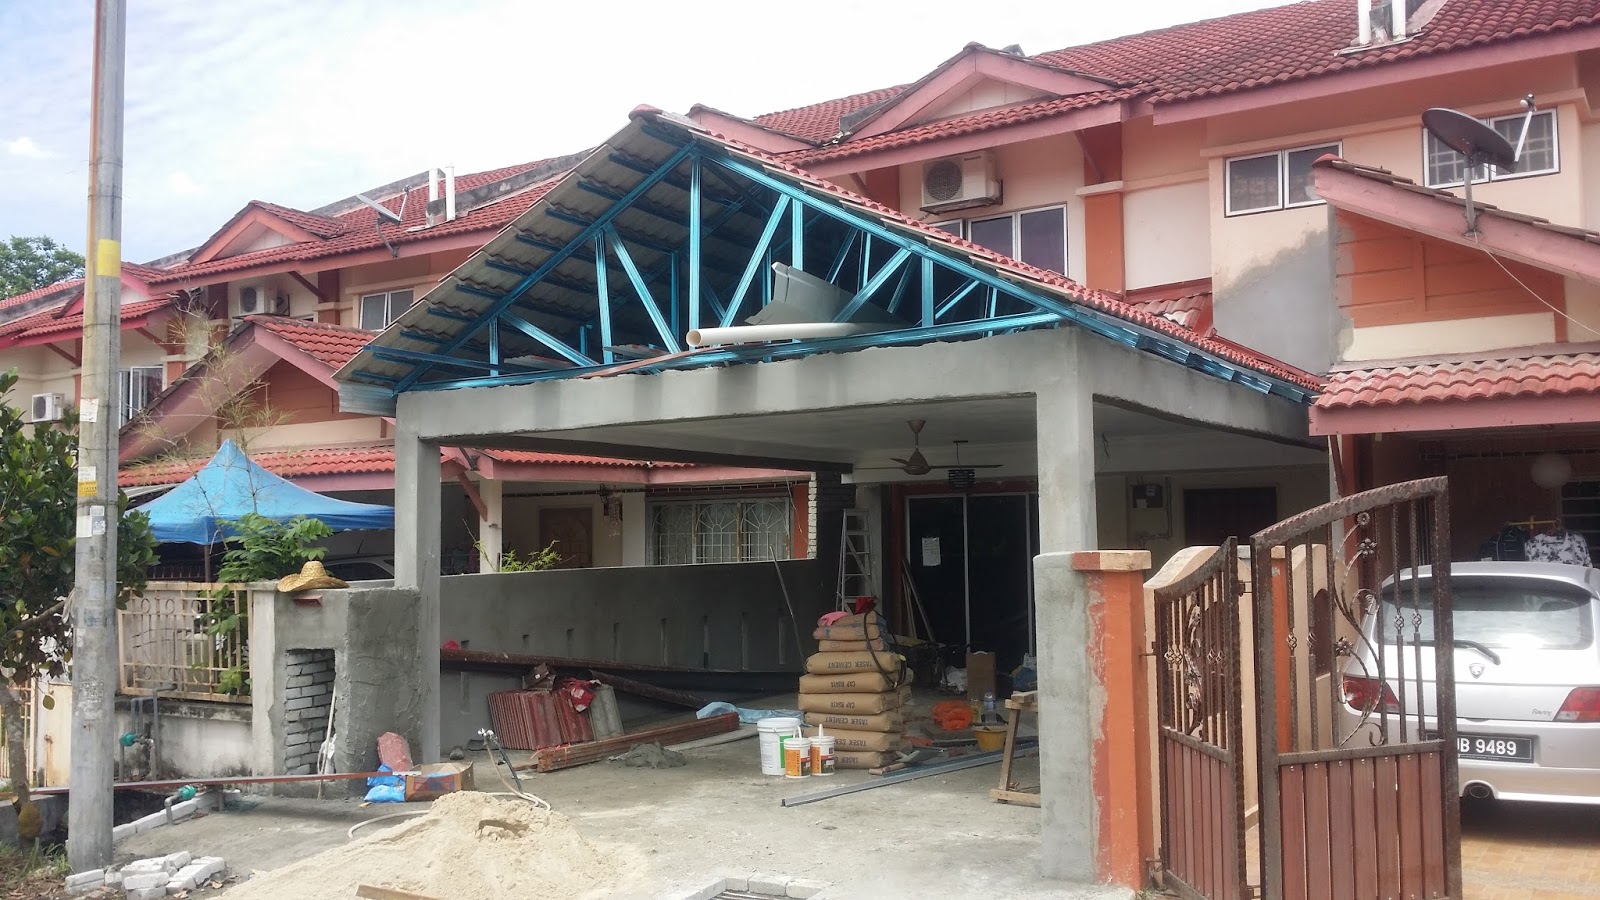 Renovation dan Ubahsuai Rumah  Kekuda Besi Rangka Atap  